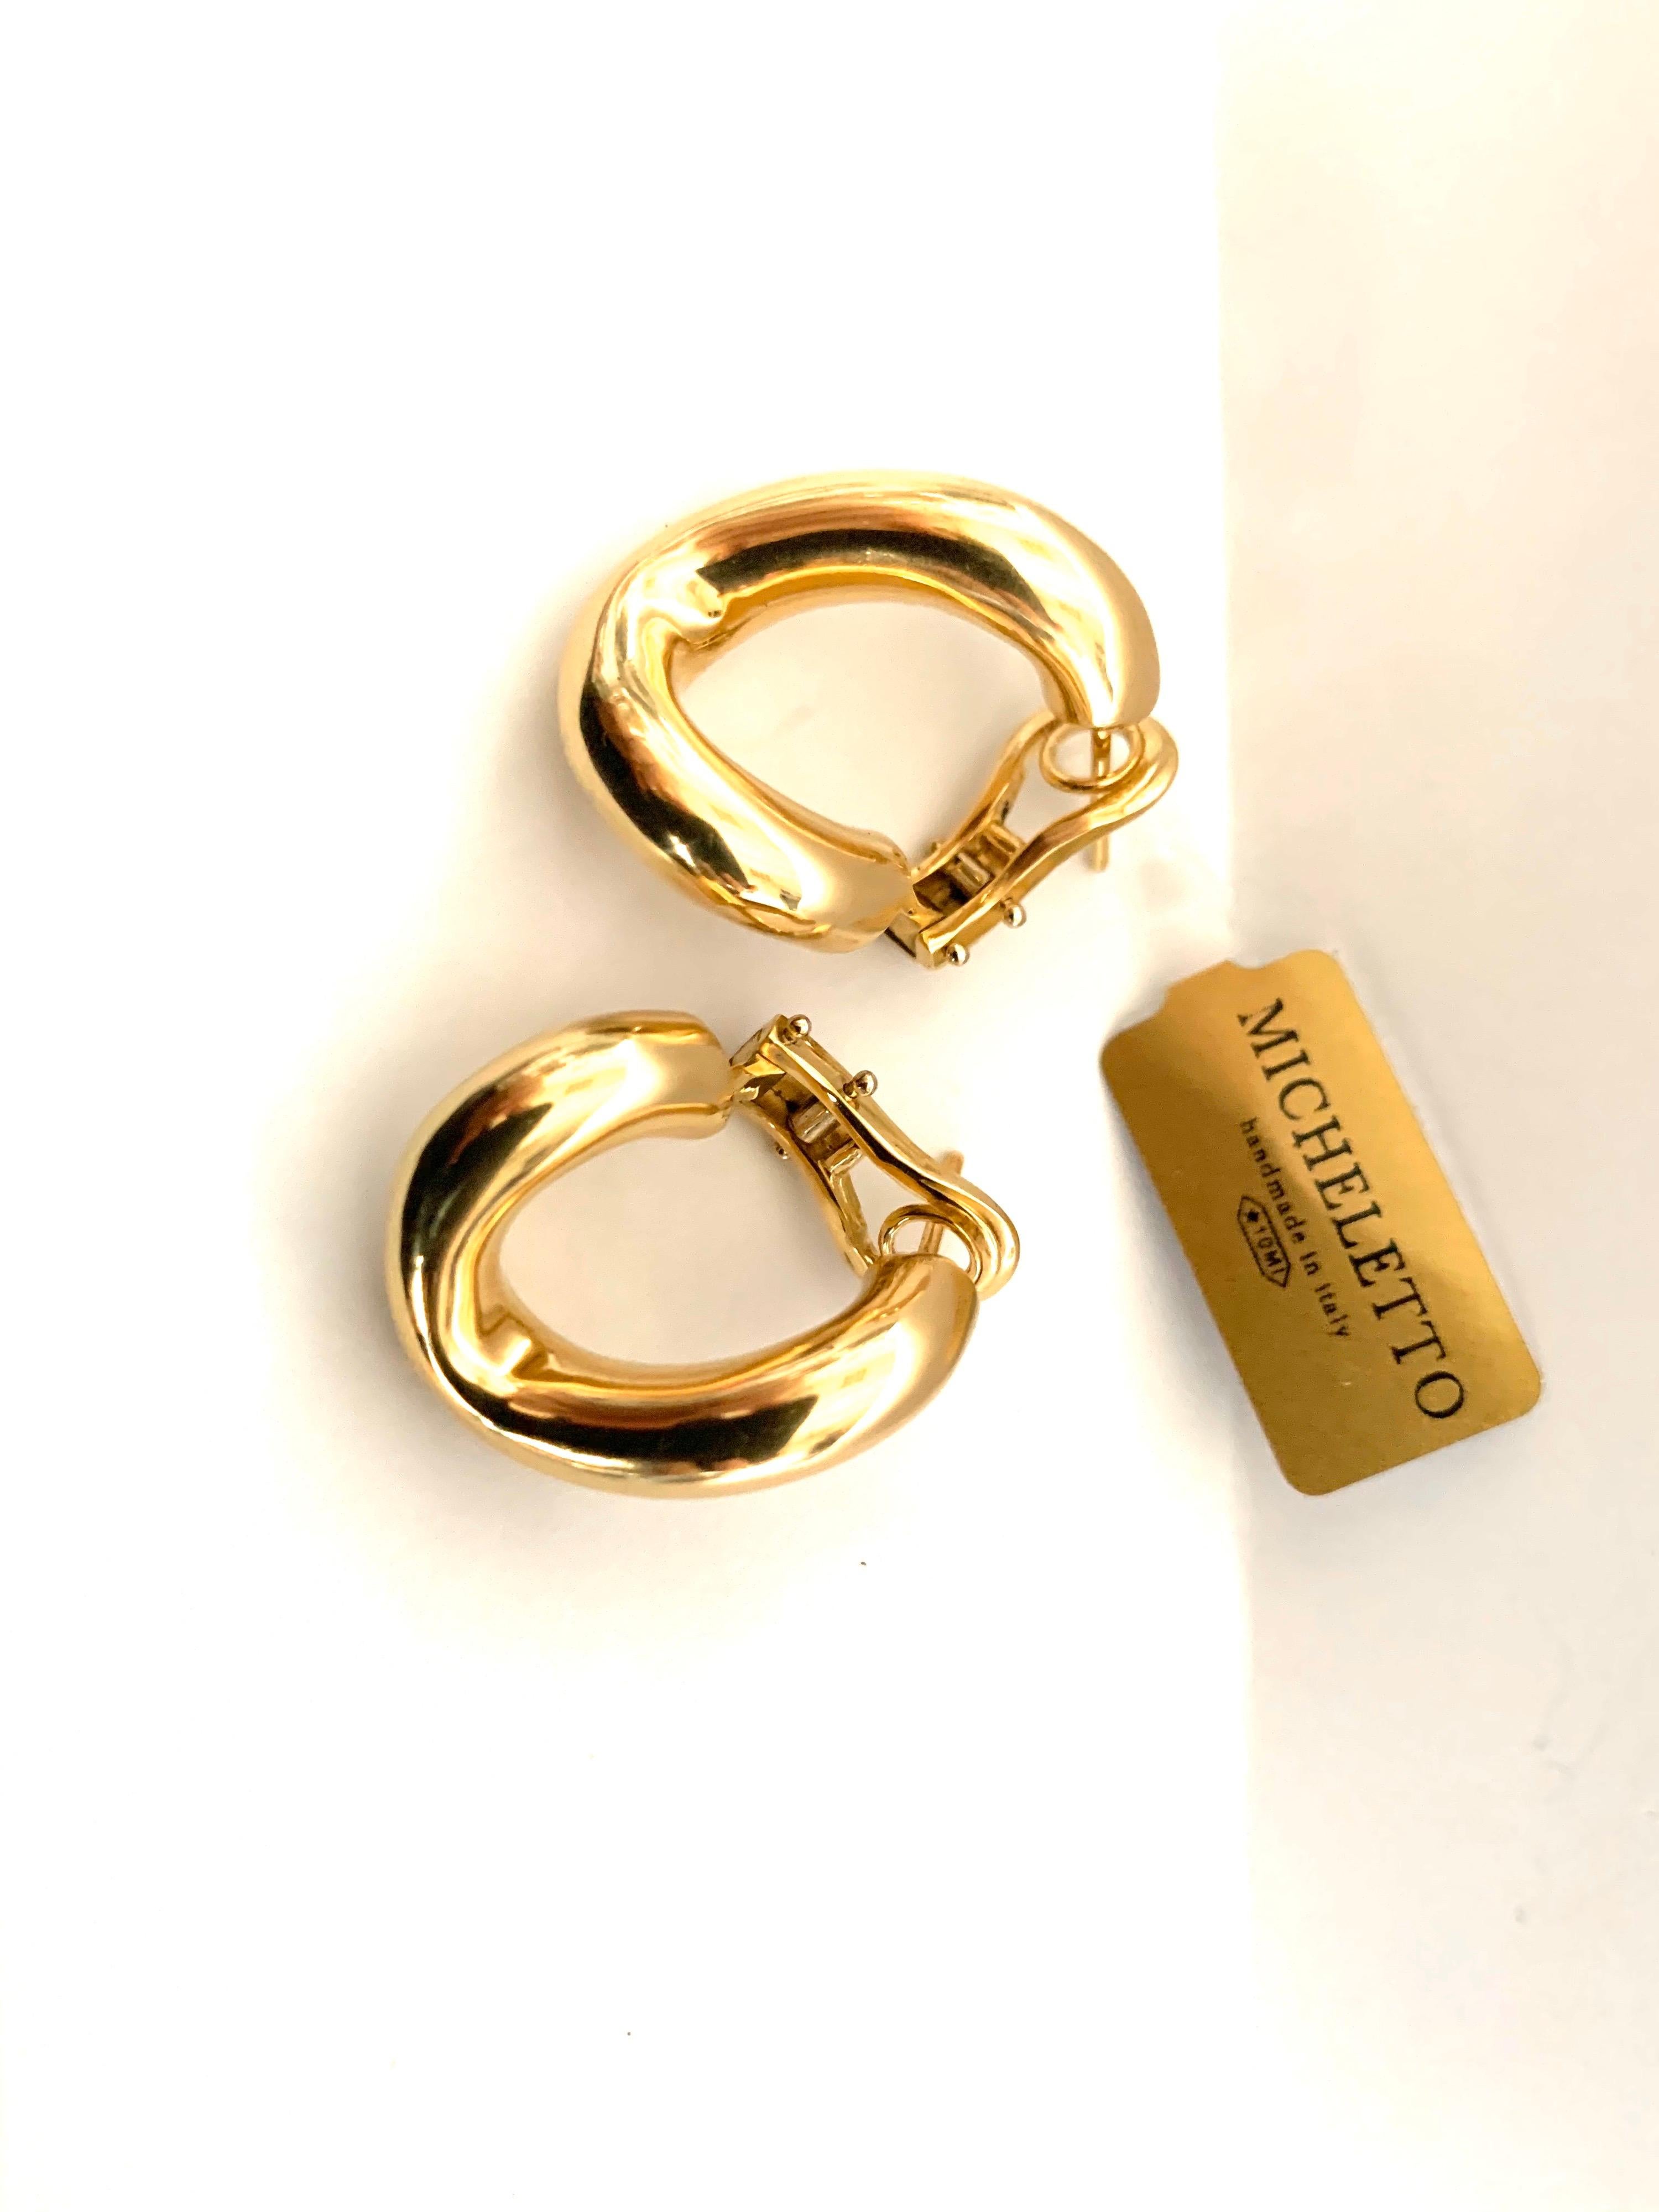 Klassisches Paar Groumette-Ohrringe aus 18 kt Gelbgold 
Dies ist die ikonische Kollektion von Micheletto.

das Gesamtgewicht des Goldes beträgt 9,9

BRIEFMARKE: 10 MI ITALIEN 750

Der vollständige Satz ist verfügbar.
Das Armband kann